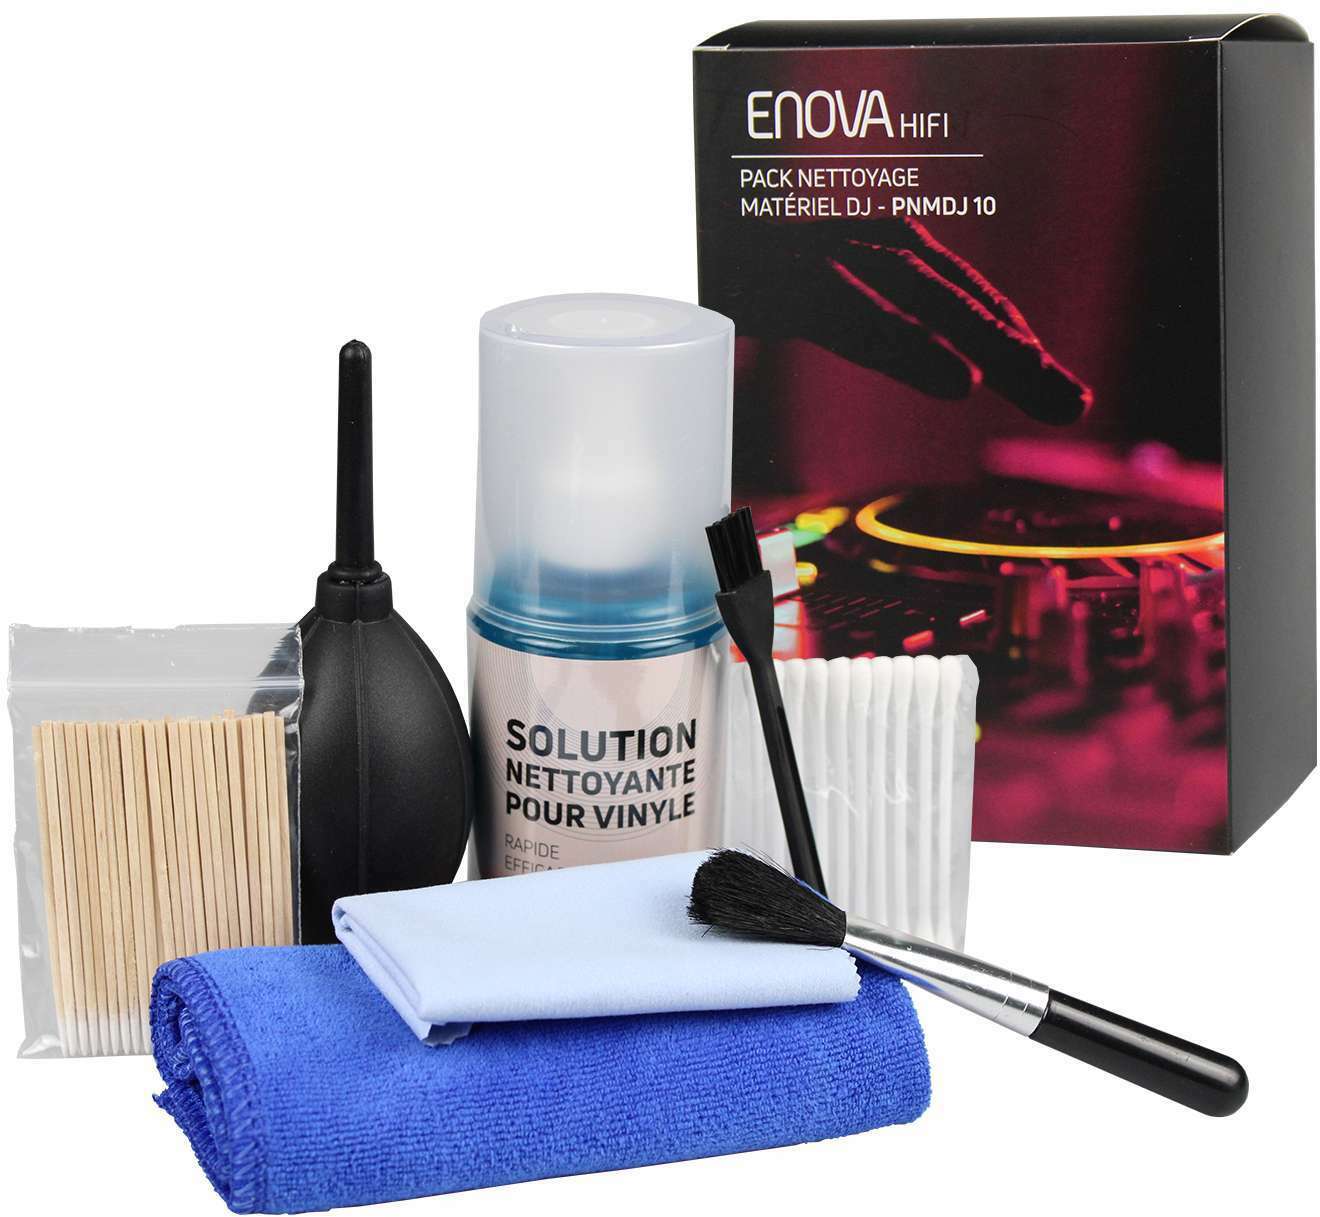 Enova Hifi Pack Nettoyage Materiel Dj - Pnmdj 10 - Cleaning kit - Main picture